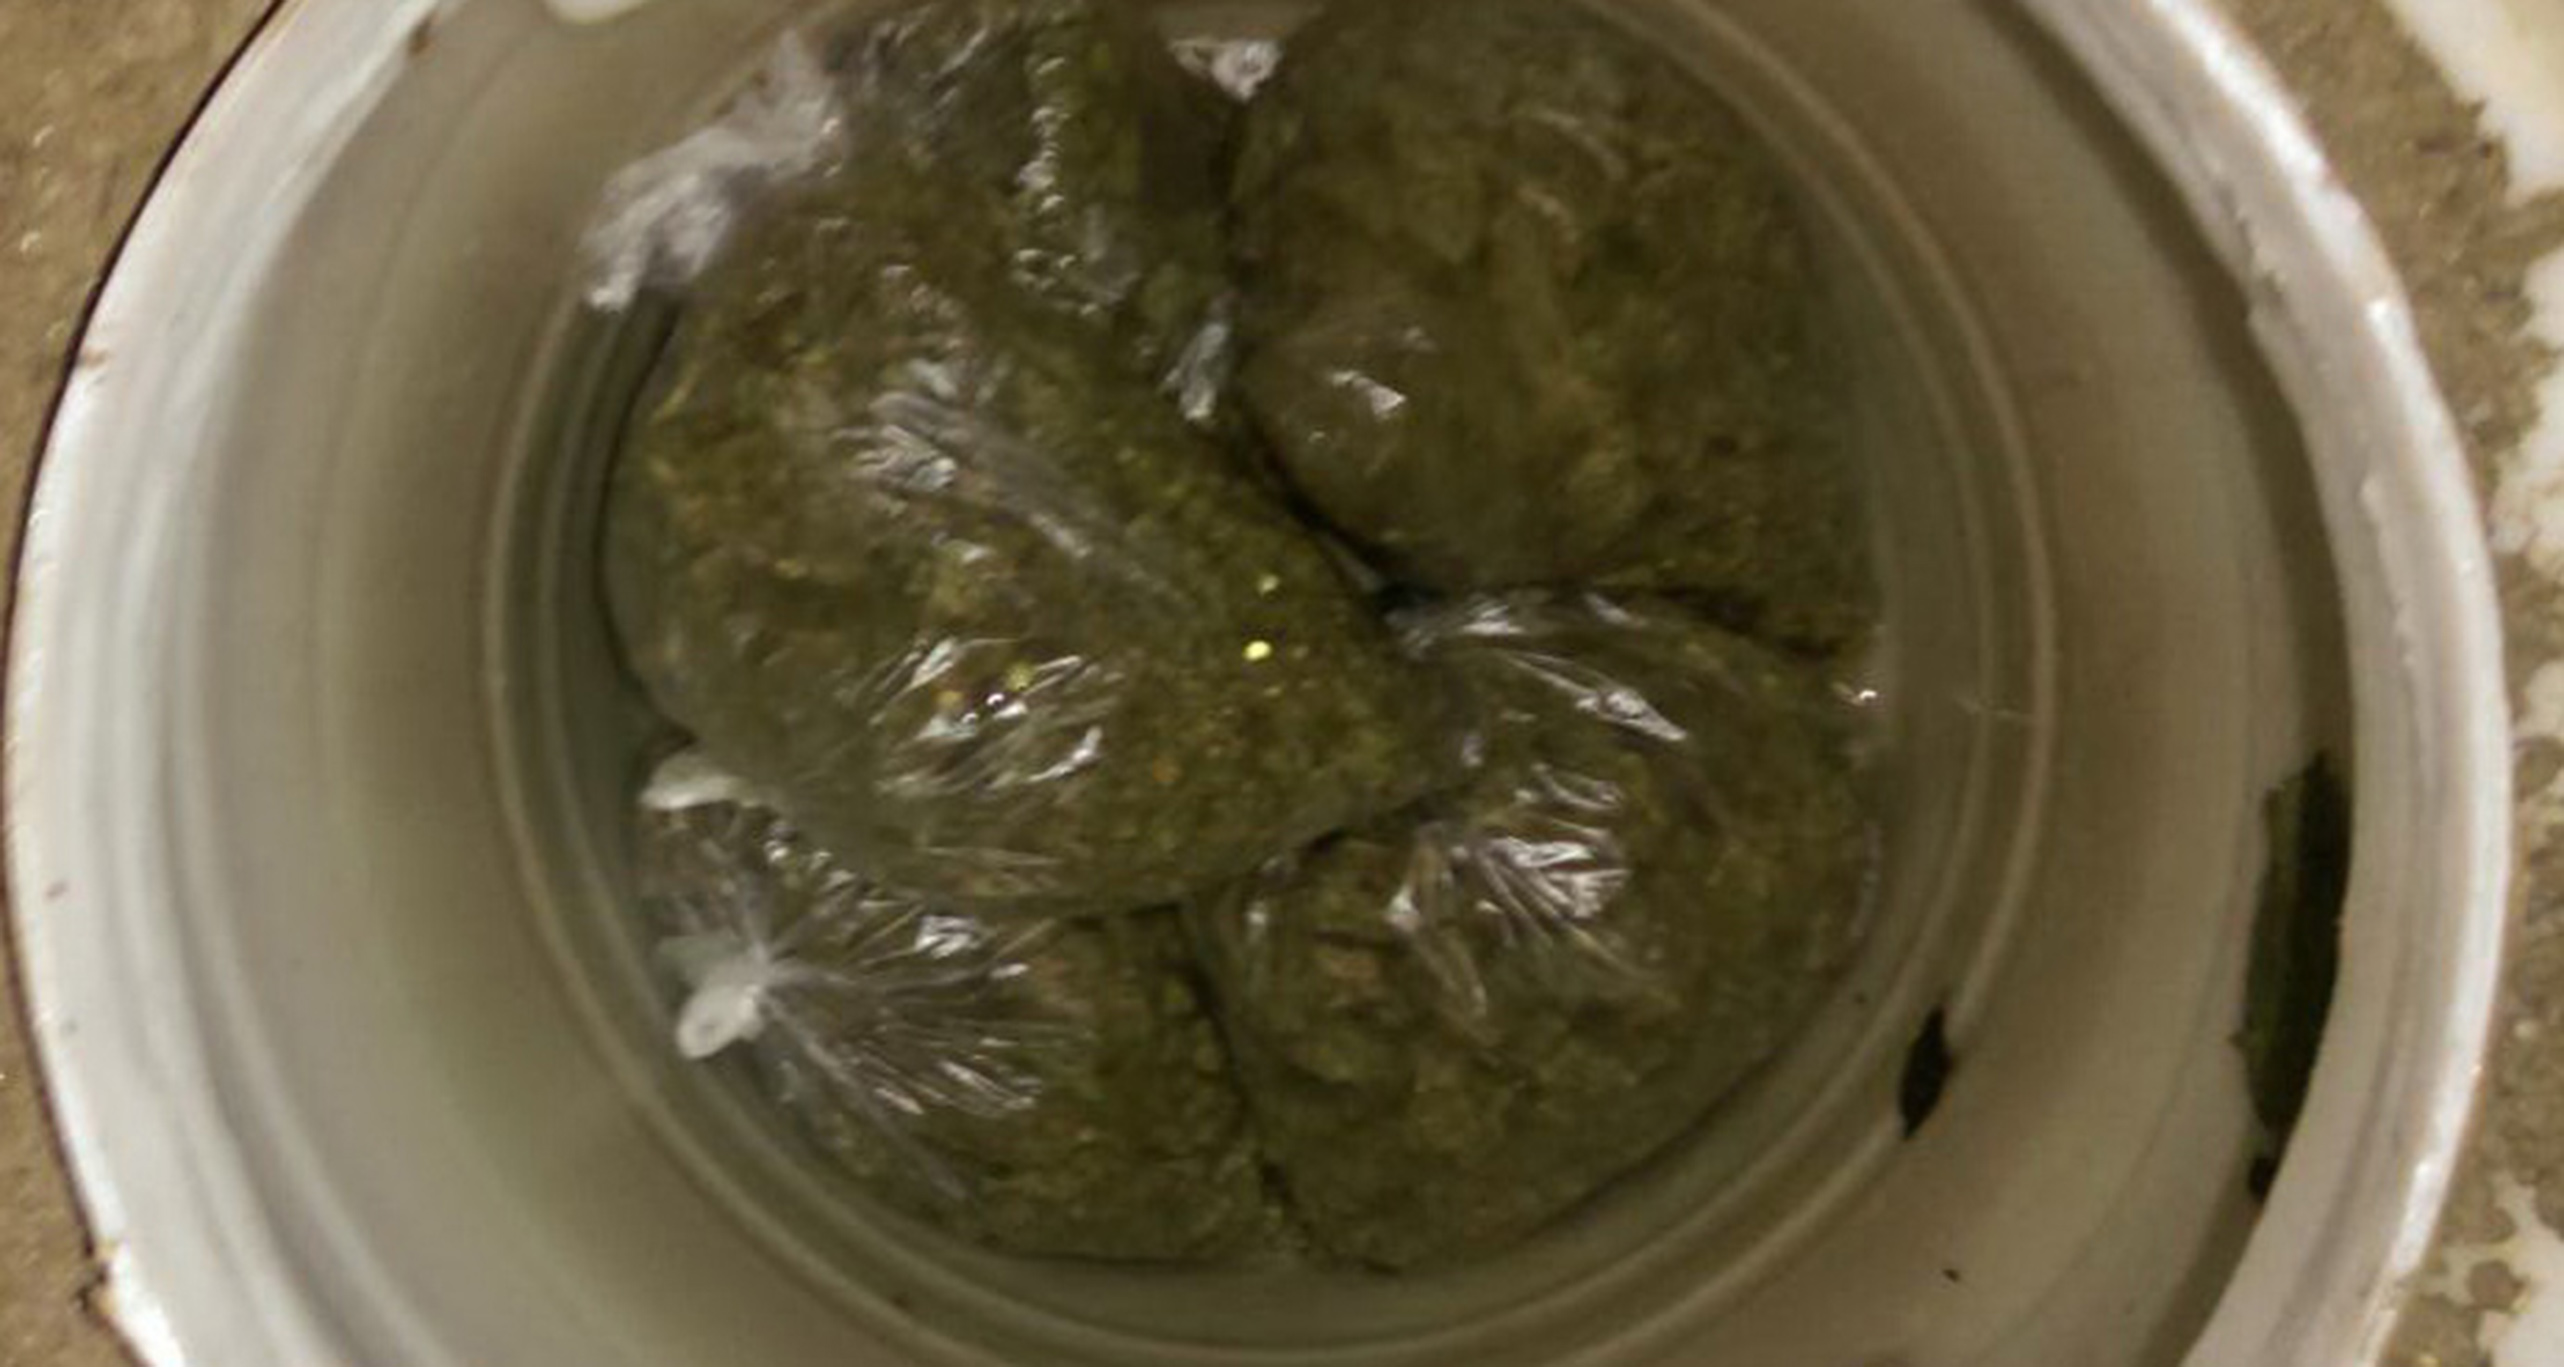 U Nišu zaplenjeno više od tri kilograma narkotika i 650 komada tableta MDMA i uhapšen osumnjičeni